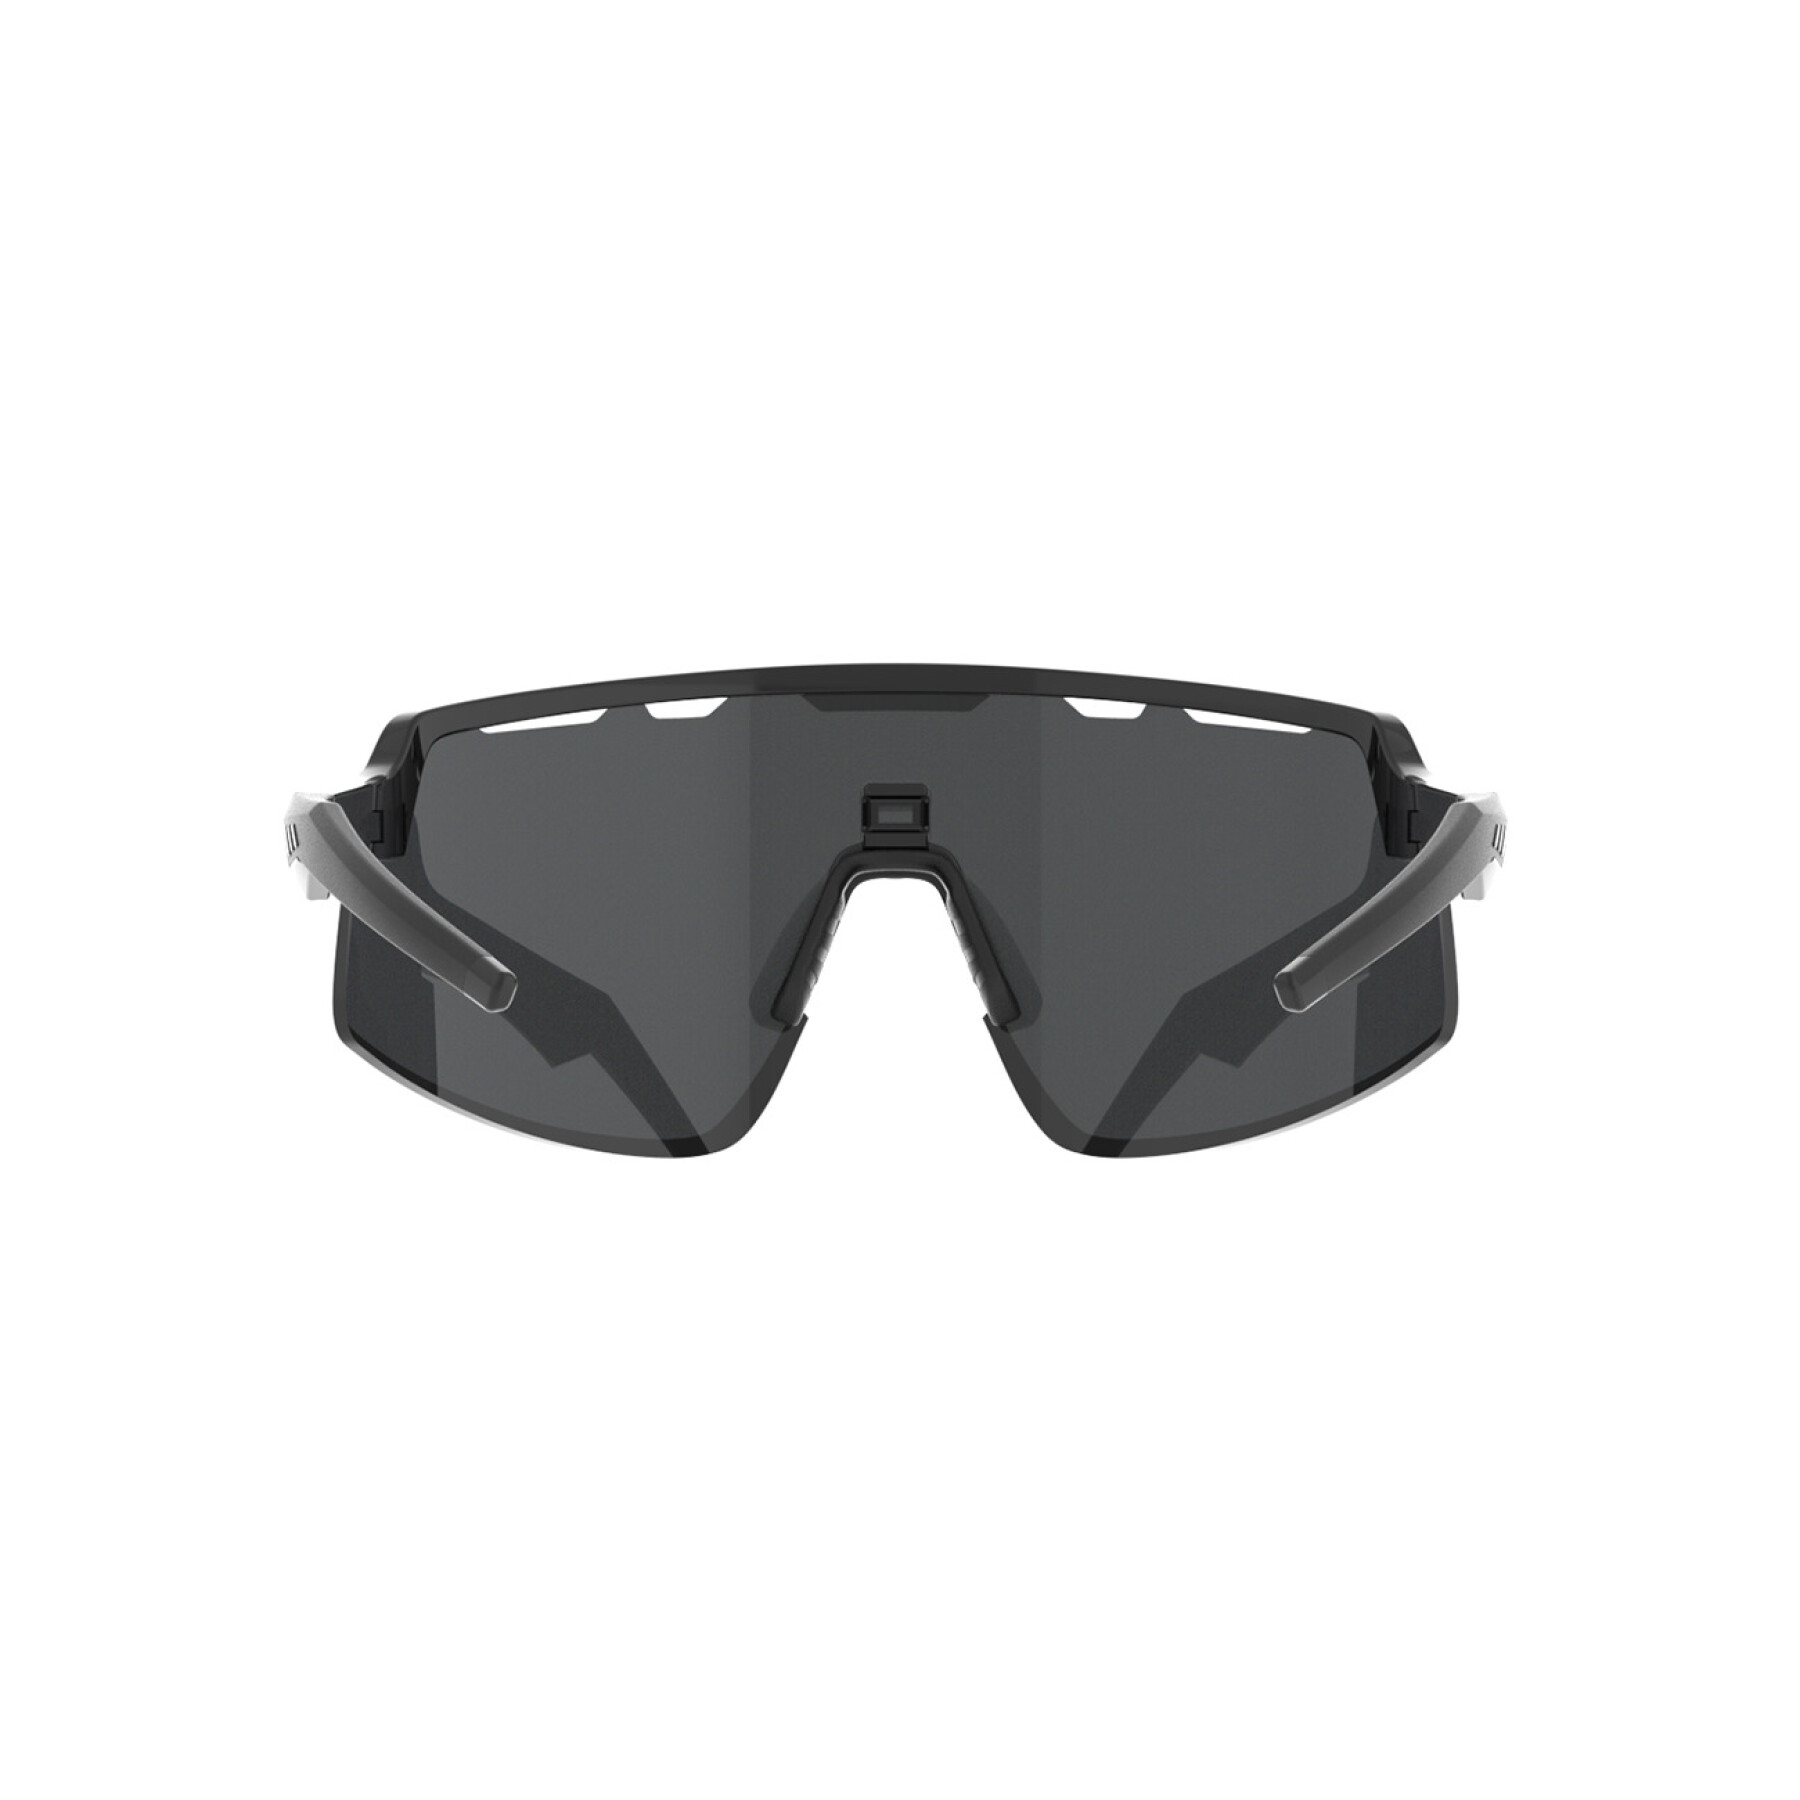 Gafas de sol AZR Pro Kromic Speed RX